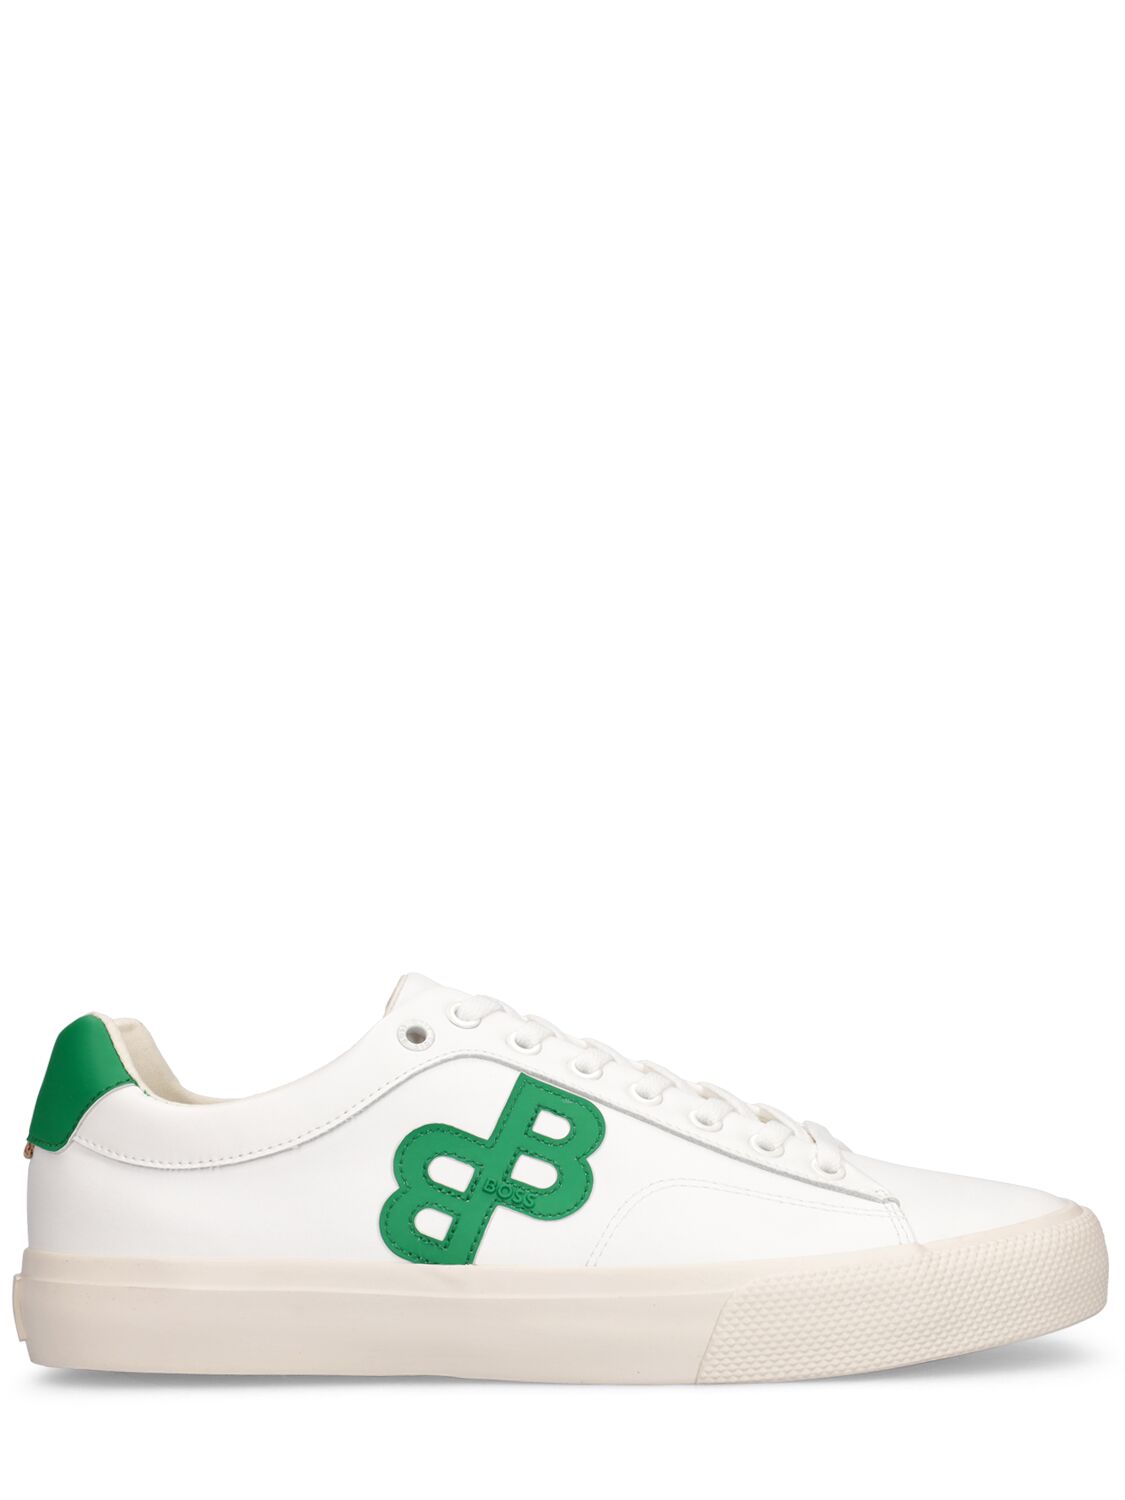 frokost spiller ur Hugo Boss Aiden Logo Faux Leather Sneakers In White,green | ModeSens